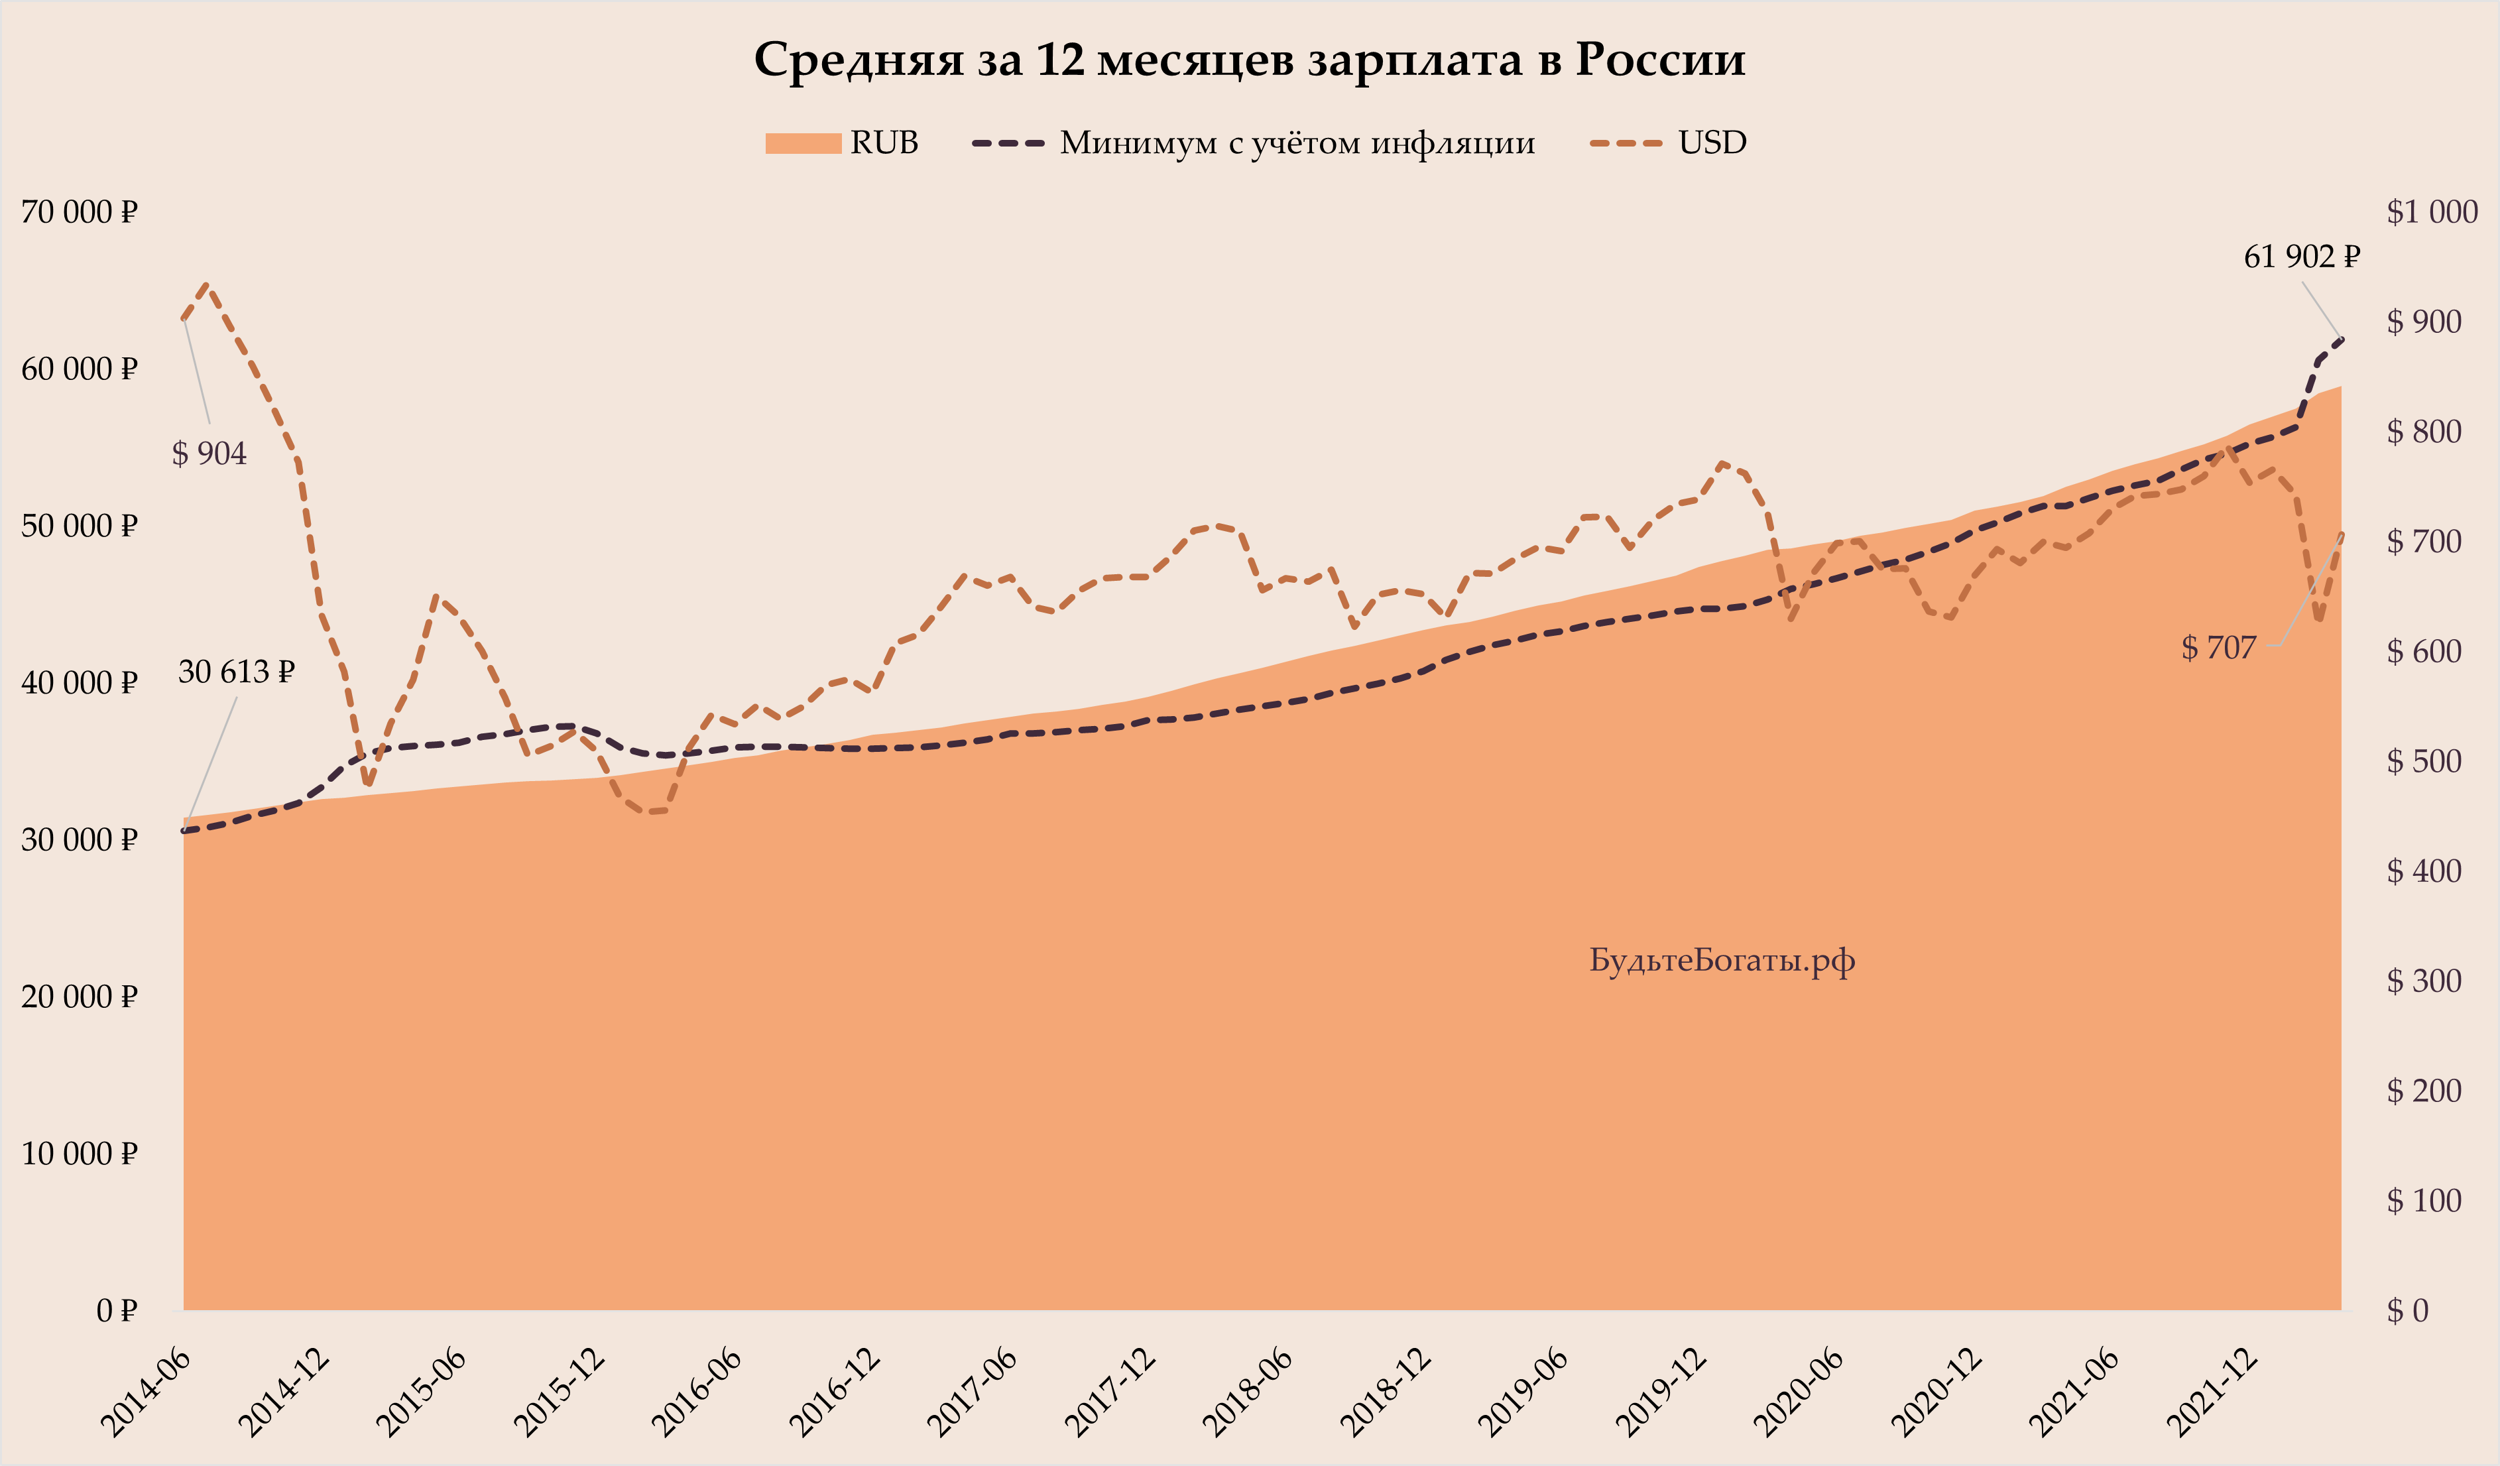 Средняя за 12 месяцев зарплата в России: в рублях, долларах и требуемая с учётом инфляции.